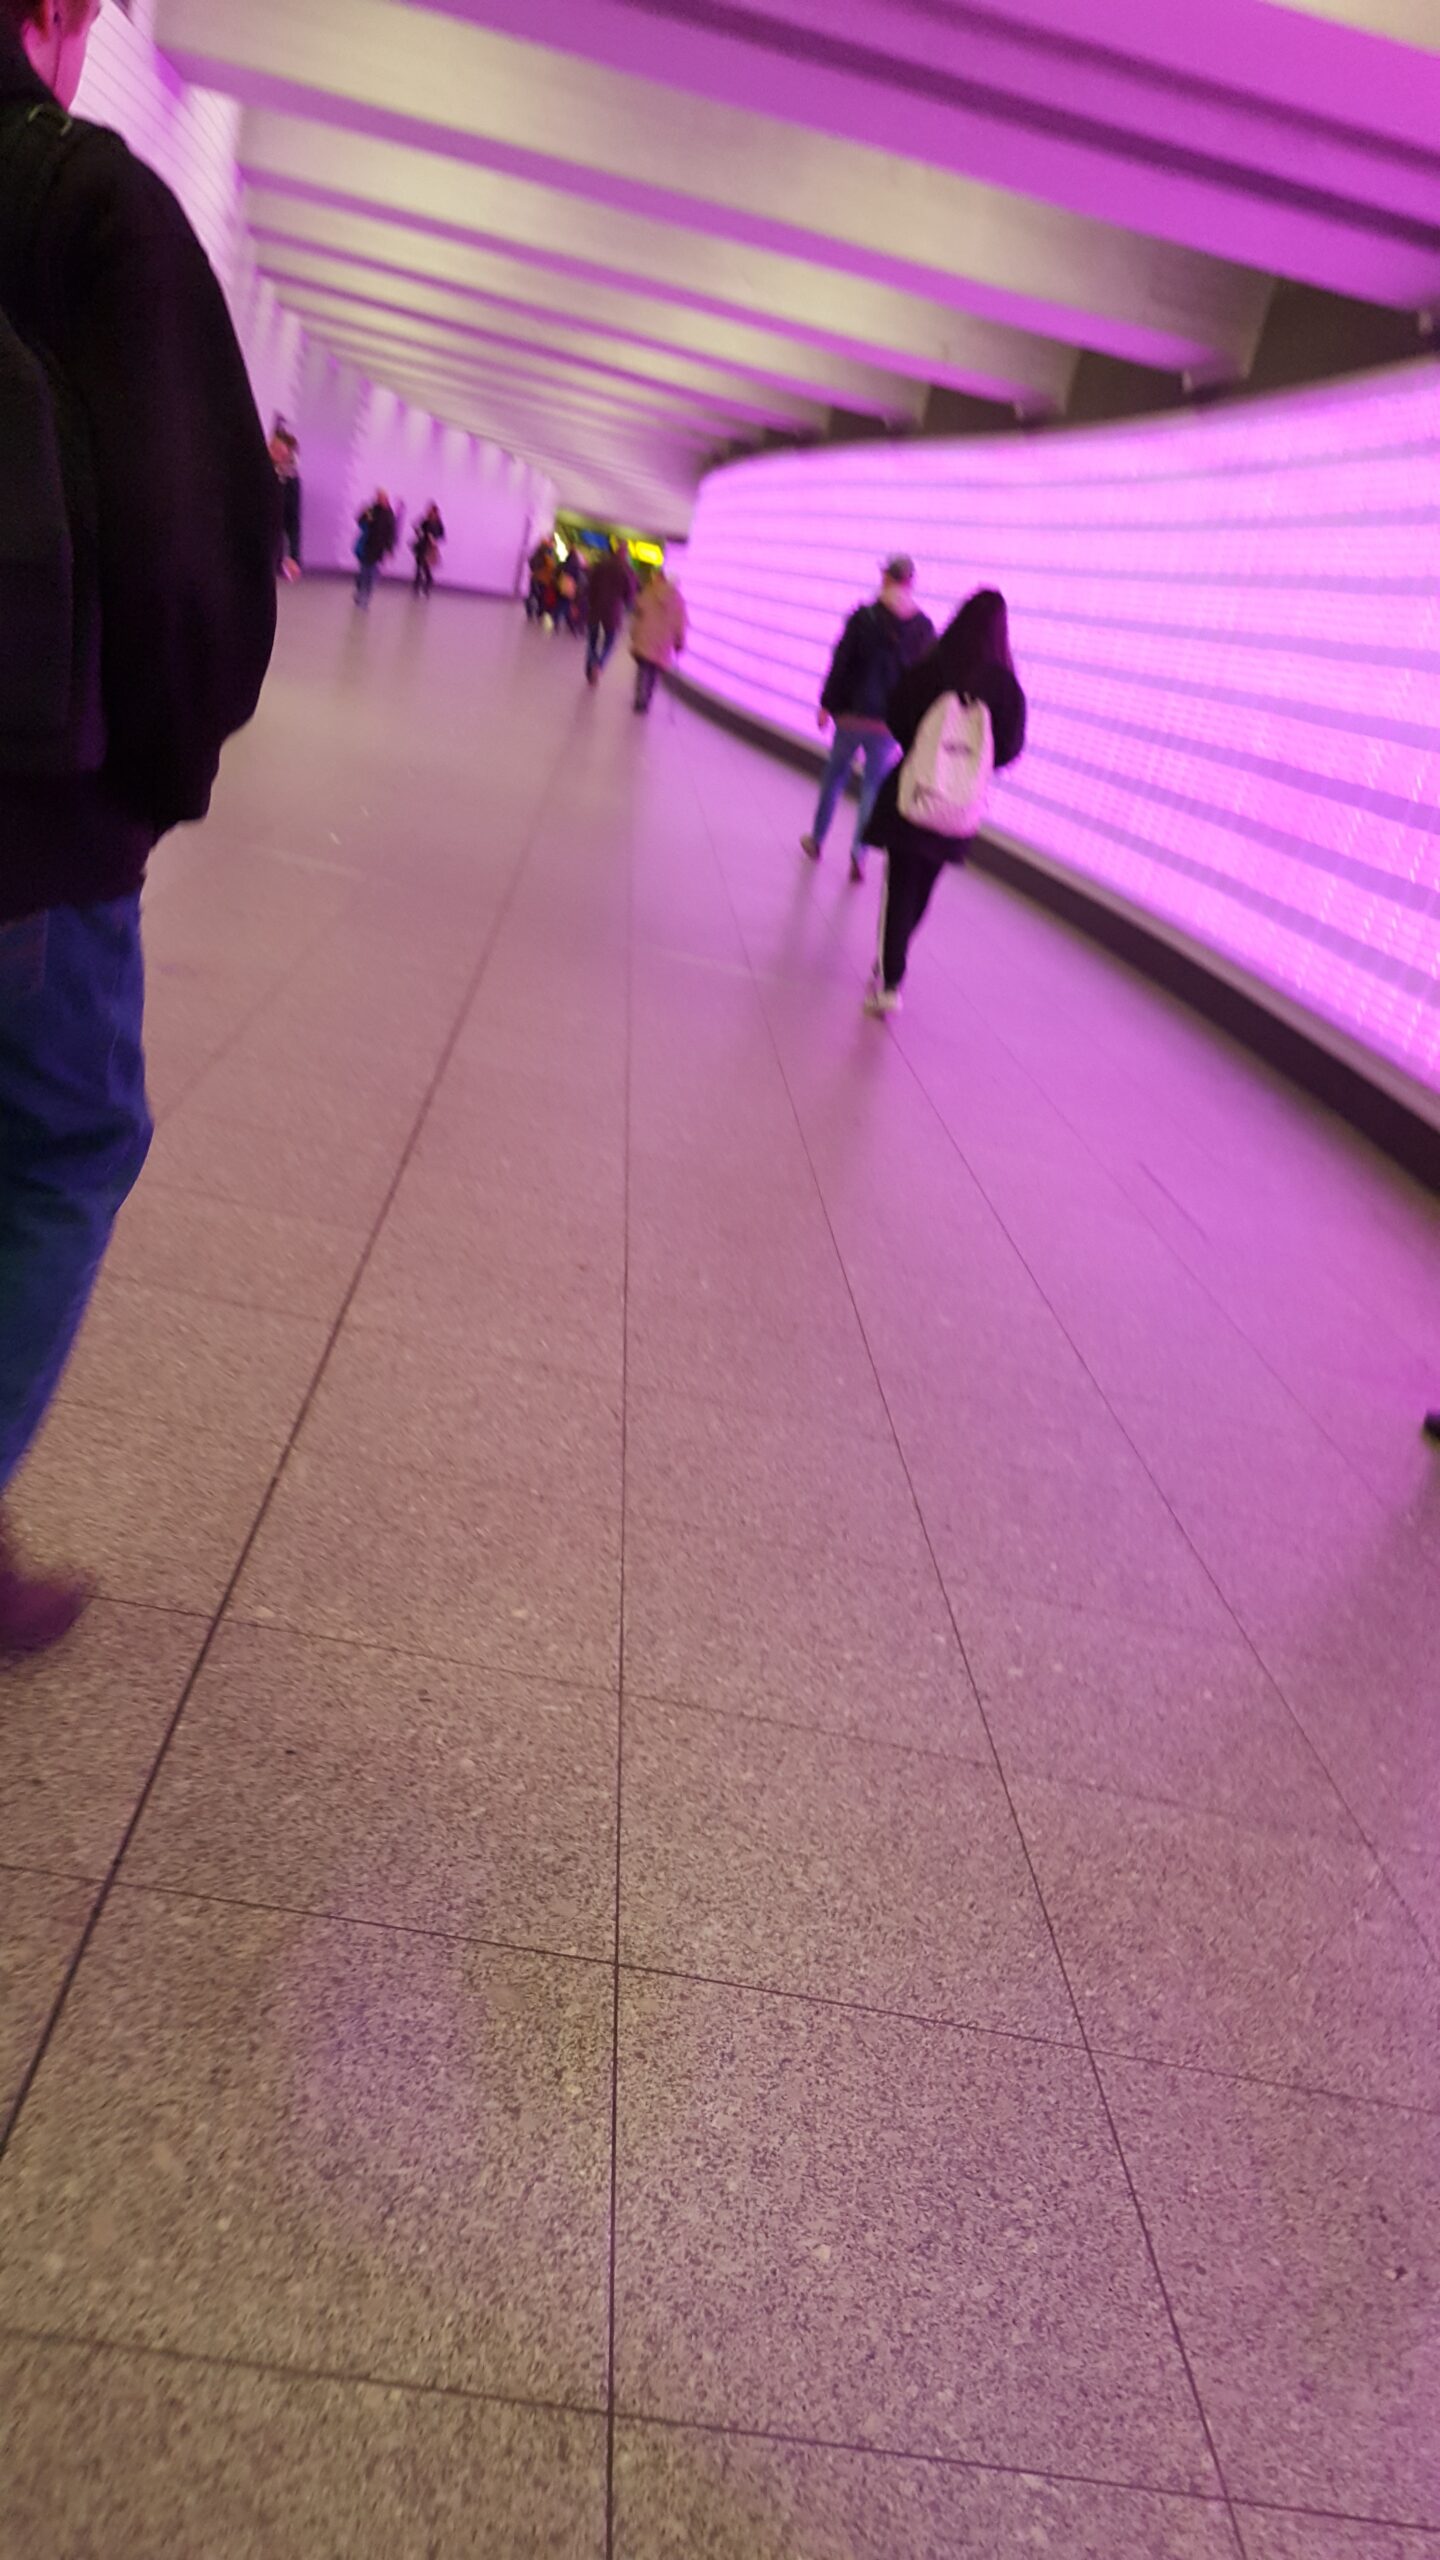 Beispiel-Foto zum Thema #Handy-Malerei. Eine Unterführung ist in rosafarbenes Licht getaucht. Eine Person mit weißem Rücksack geht wie viele weitere Menschen ihren Weg. 